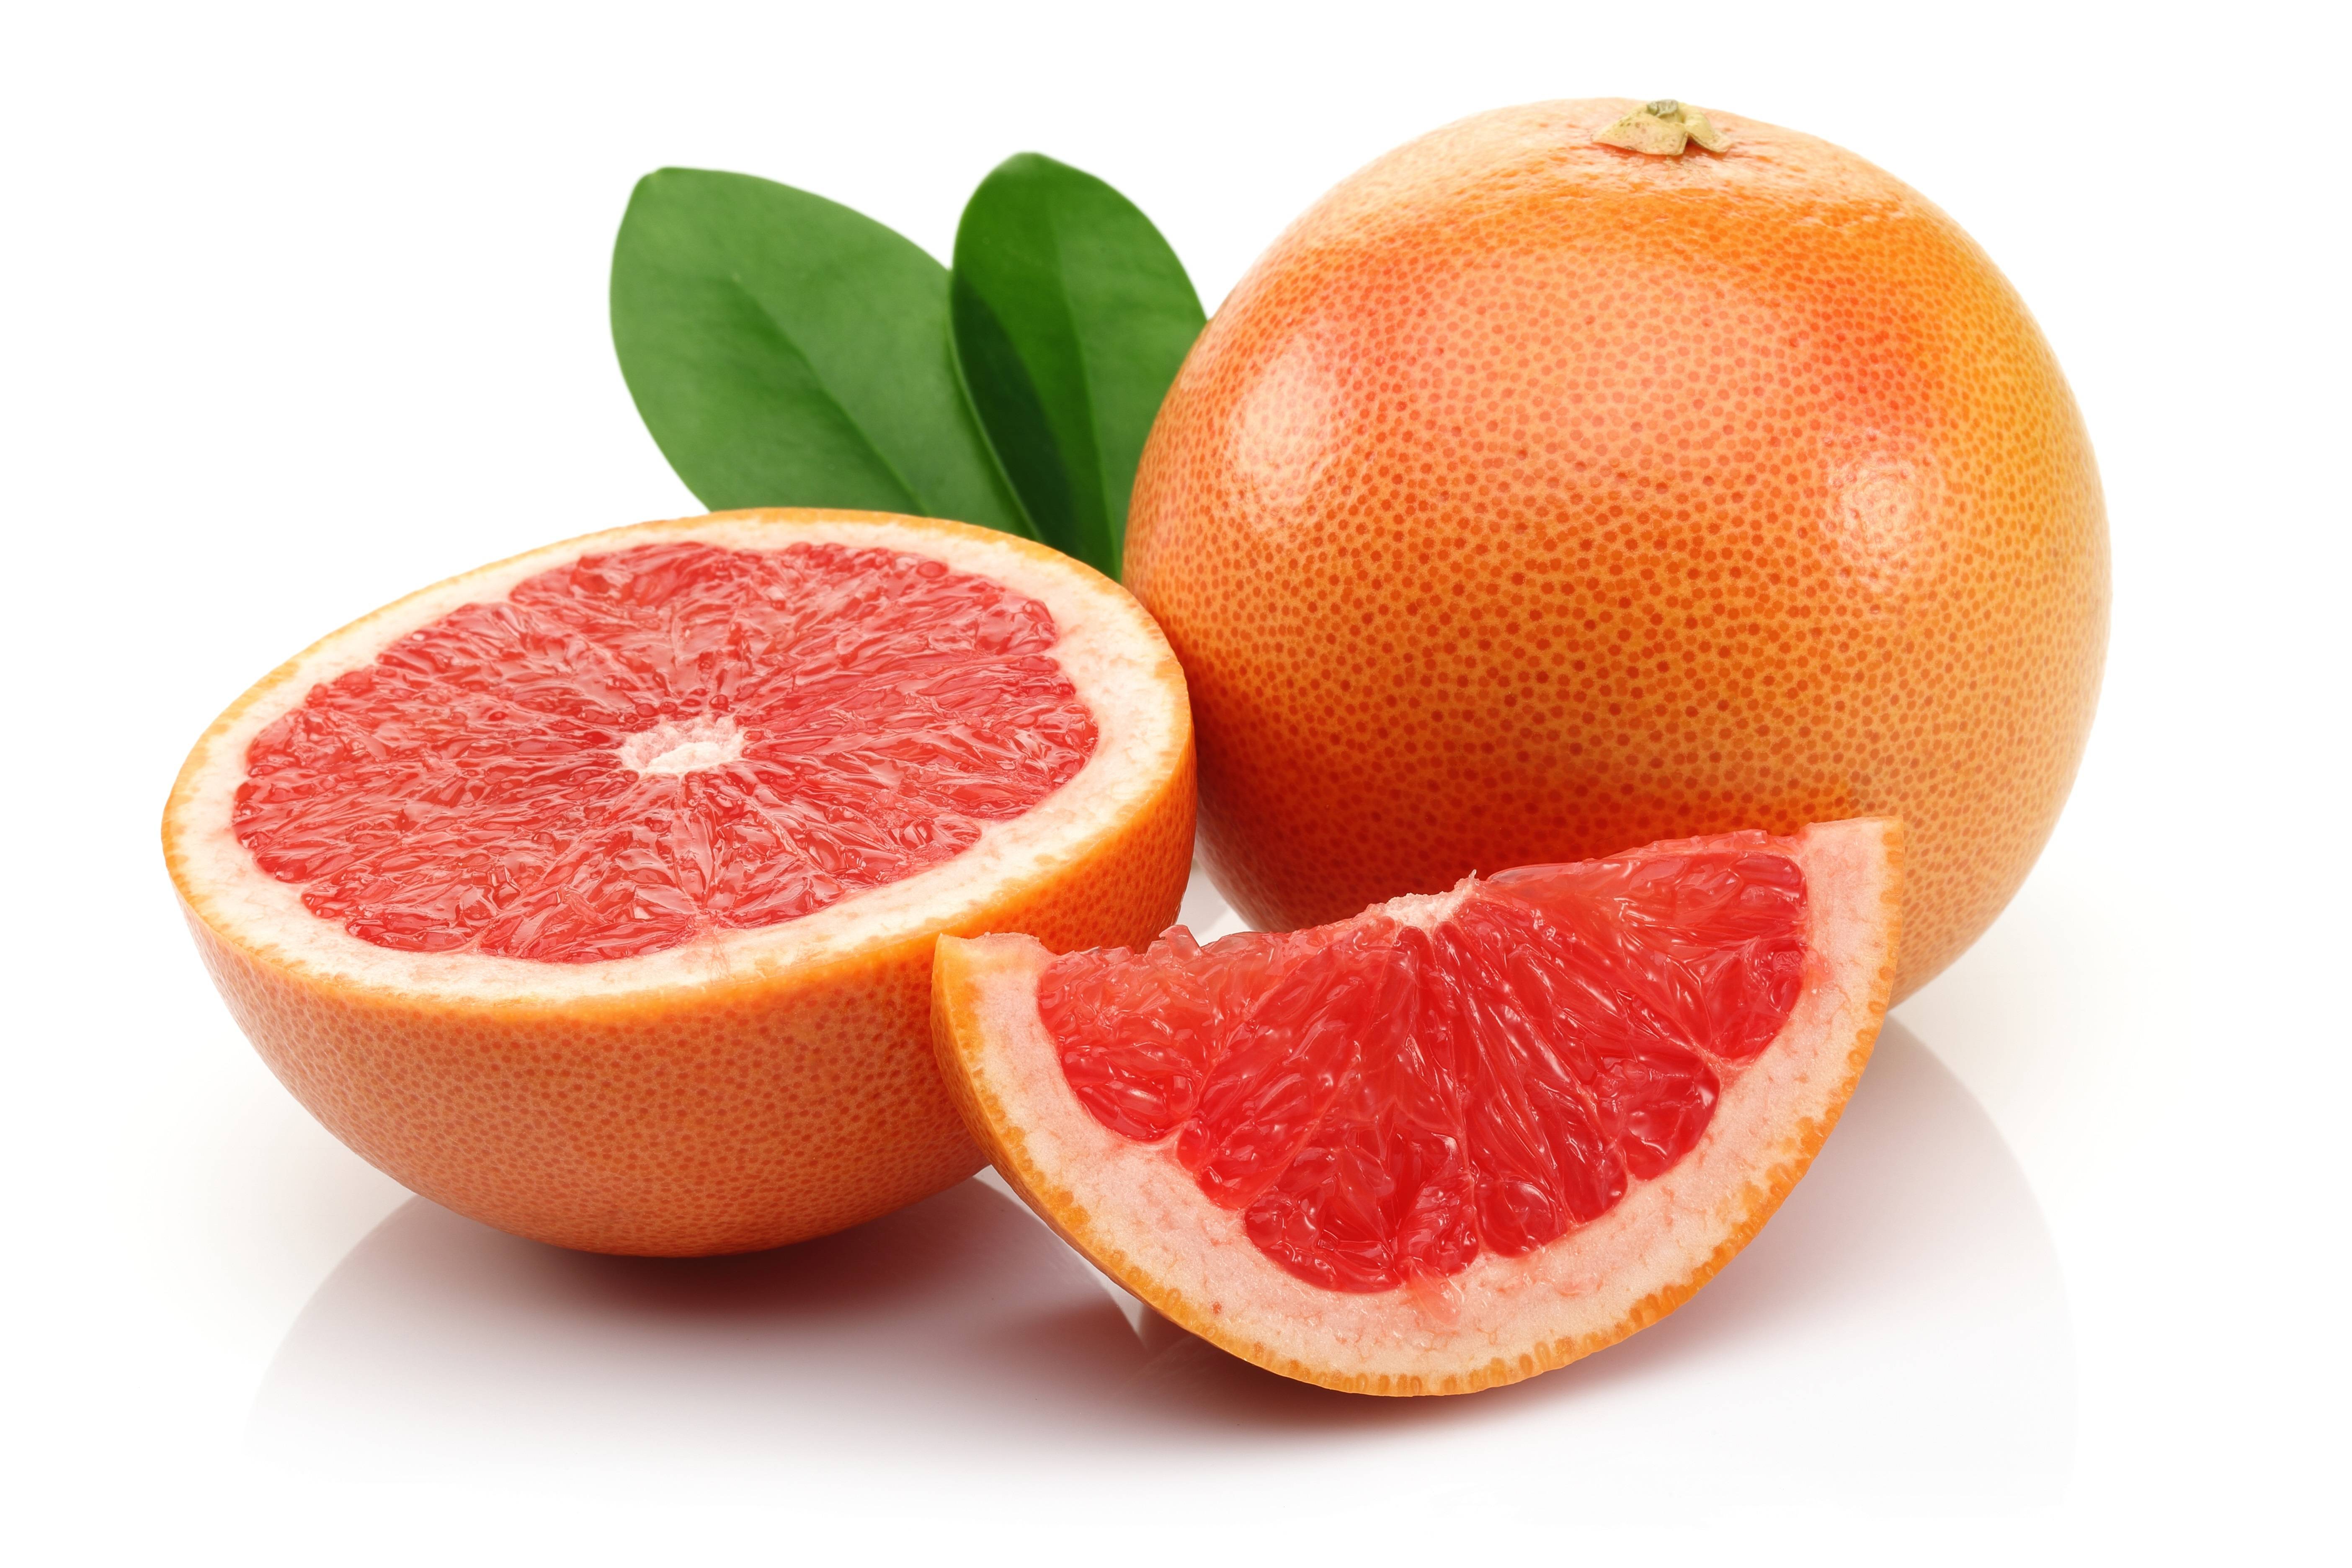 Свежевыжатые соки из цитрусовых фруктов - больше пользы или вреда?